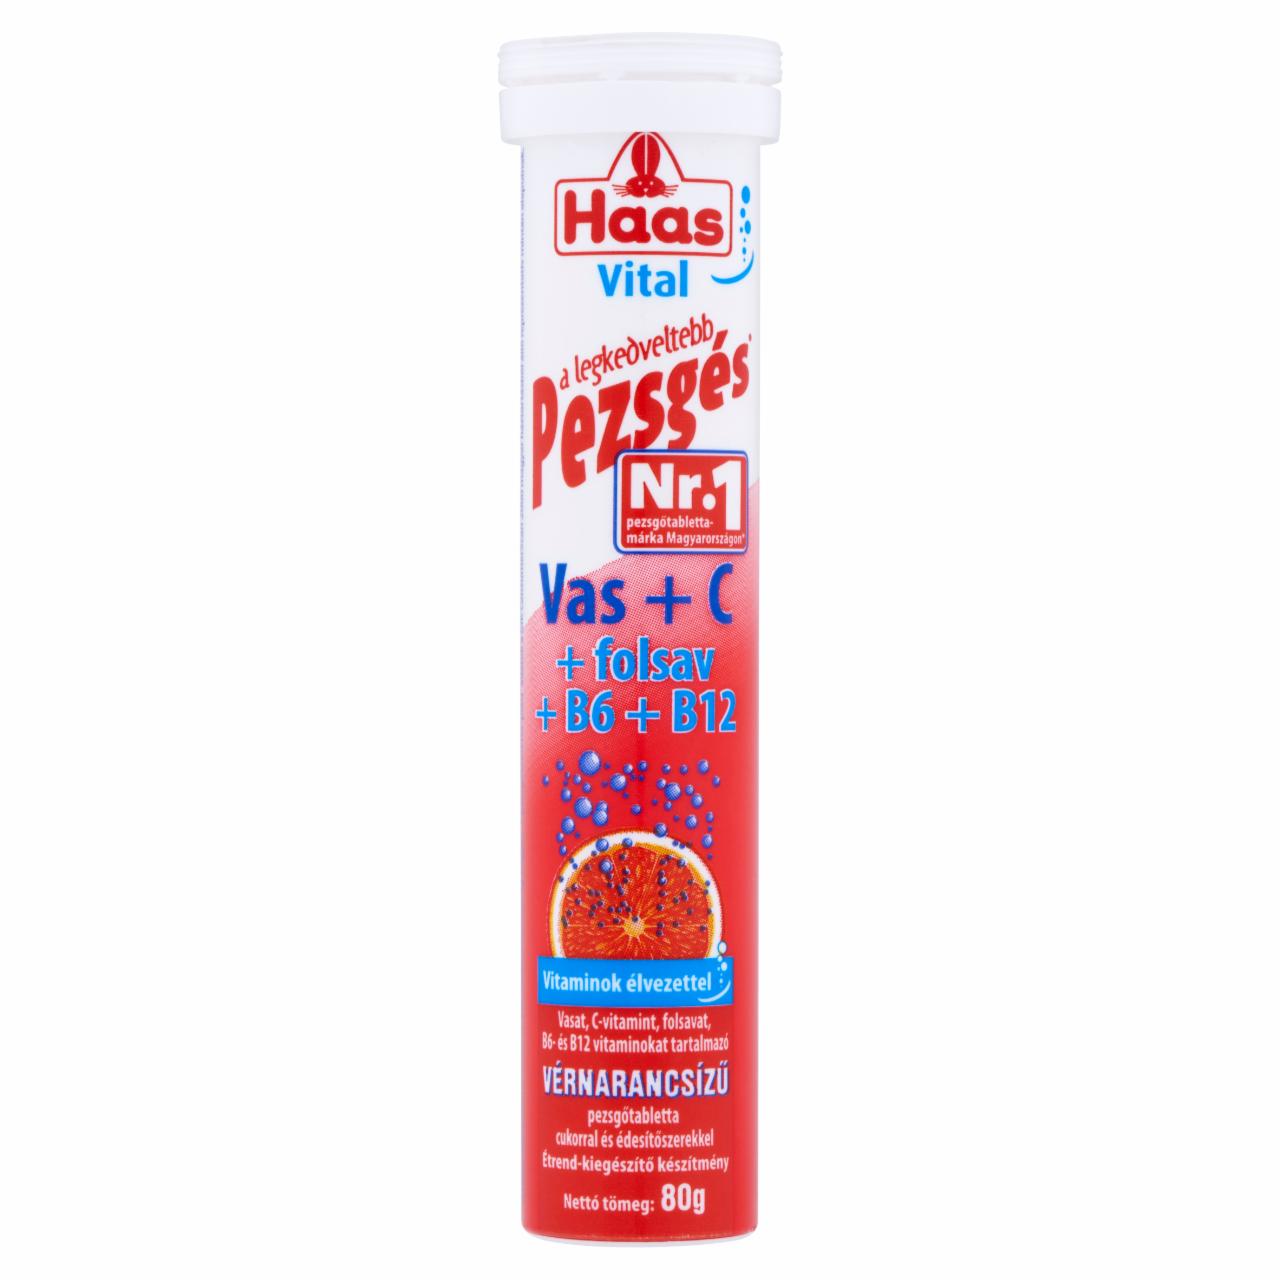 Képek - Haas Vital Vas + C + folsav + B6 + B12 vérnarancsízű étrend-kiegészítő pezsgőtabletta 80 g